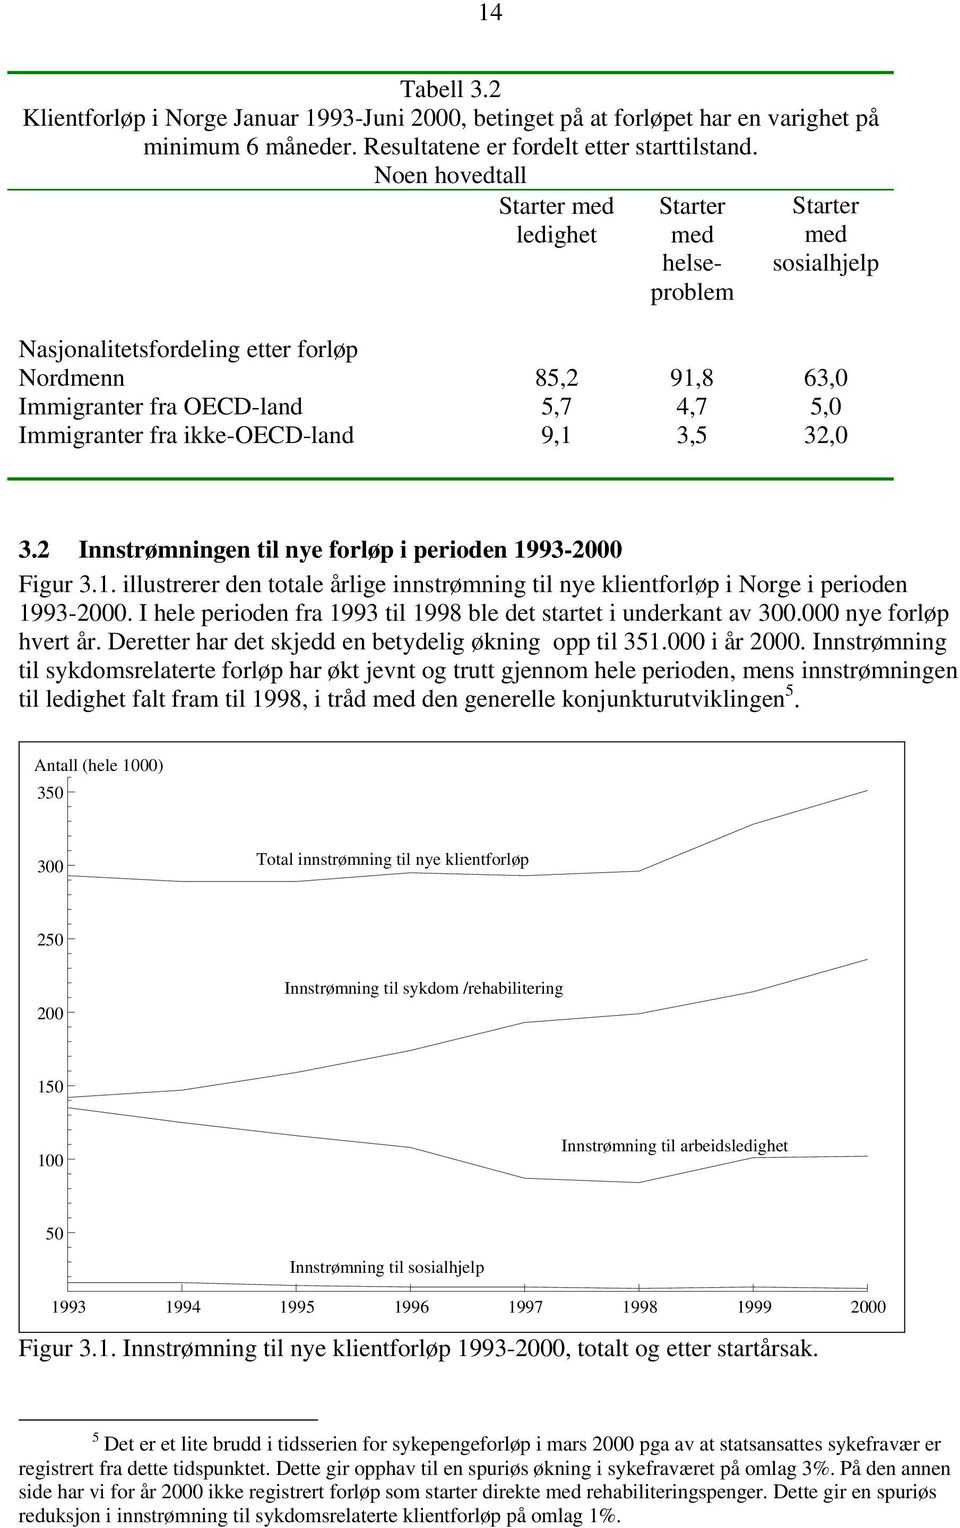 ikke-oecd-land 9,1 3,5 32,0 3.2 Innstrømningen til nye forløp i perioden 1993-2000 Figur 3.1. illustrerer den totale årlige innstrømning til nye klientforløp i Norge i perioden 1993-2000.